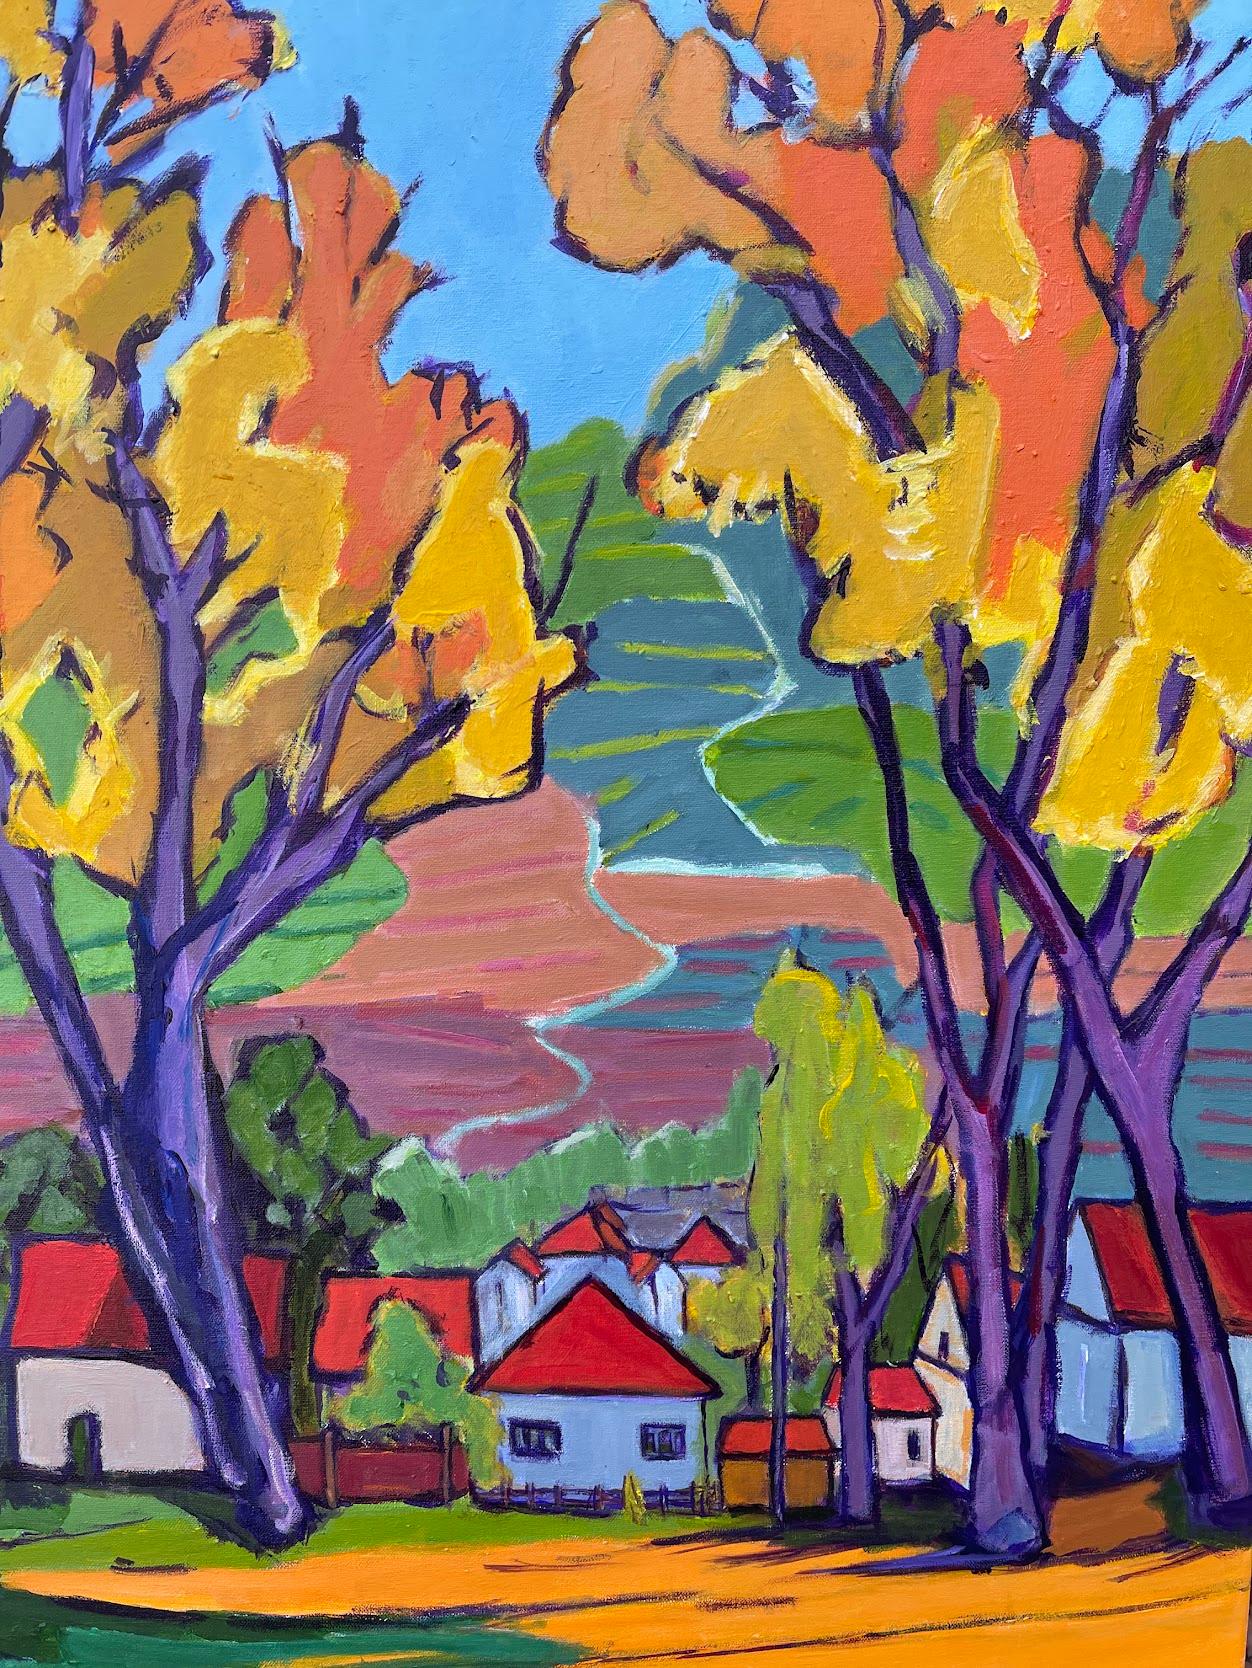 <p>Kommentare des KünstlersEine farbenfrohe Herbstszene entfaltet sich, während sich hoch aufragende Bäume mit goldenen Blättern in den azurblauen Himmel recken.<br> In der ruhigen Nachbarschaft darunter stehen malerische Häuser inmitten des Laubes.